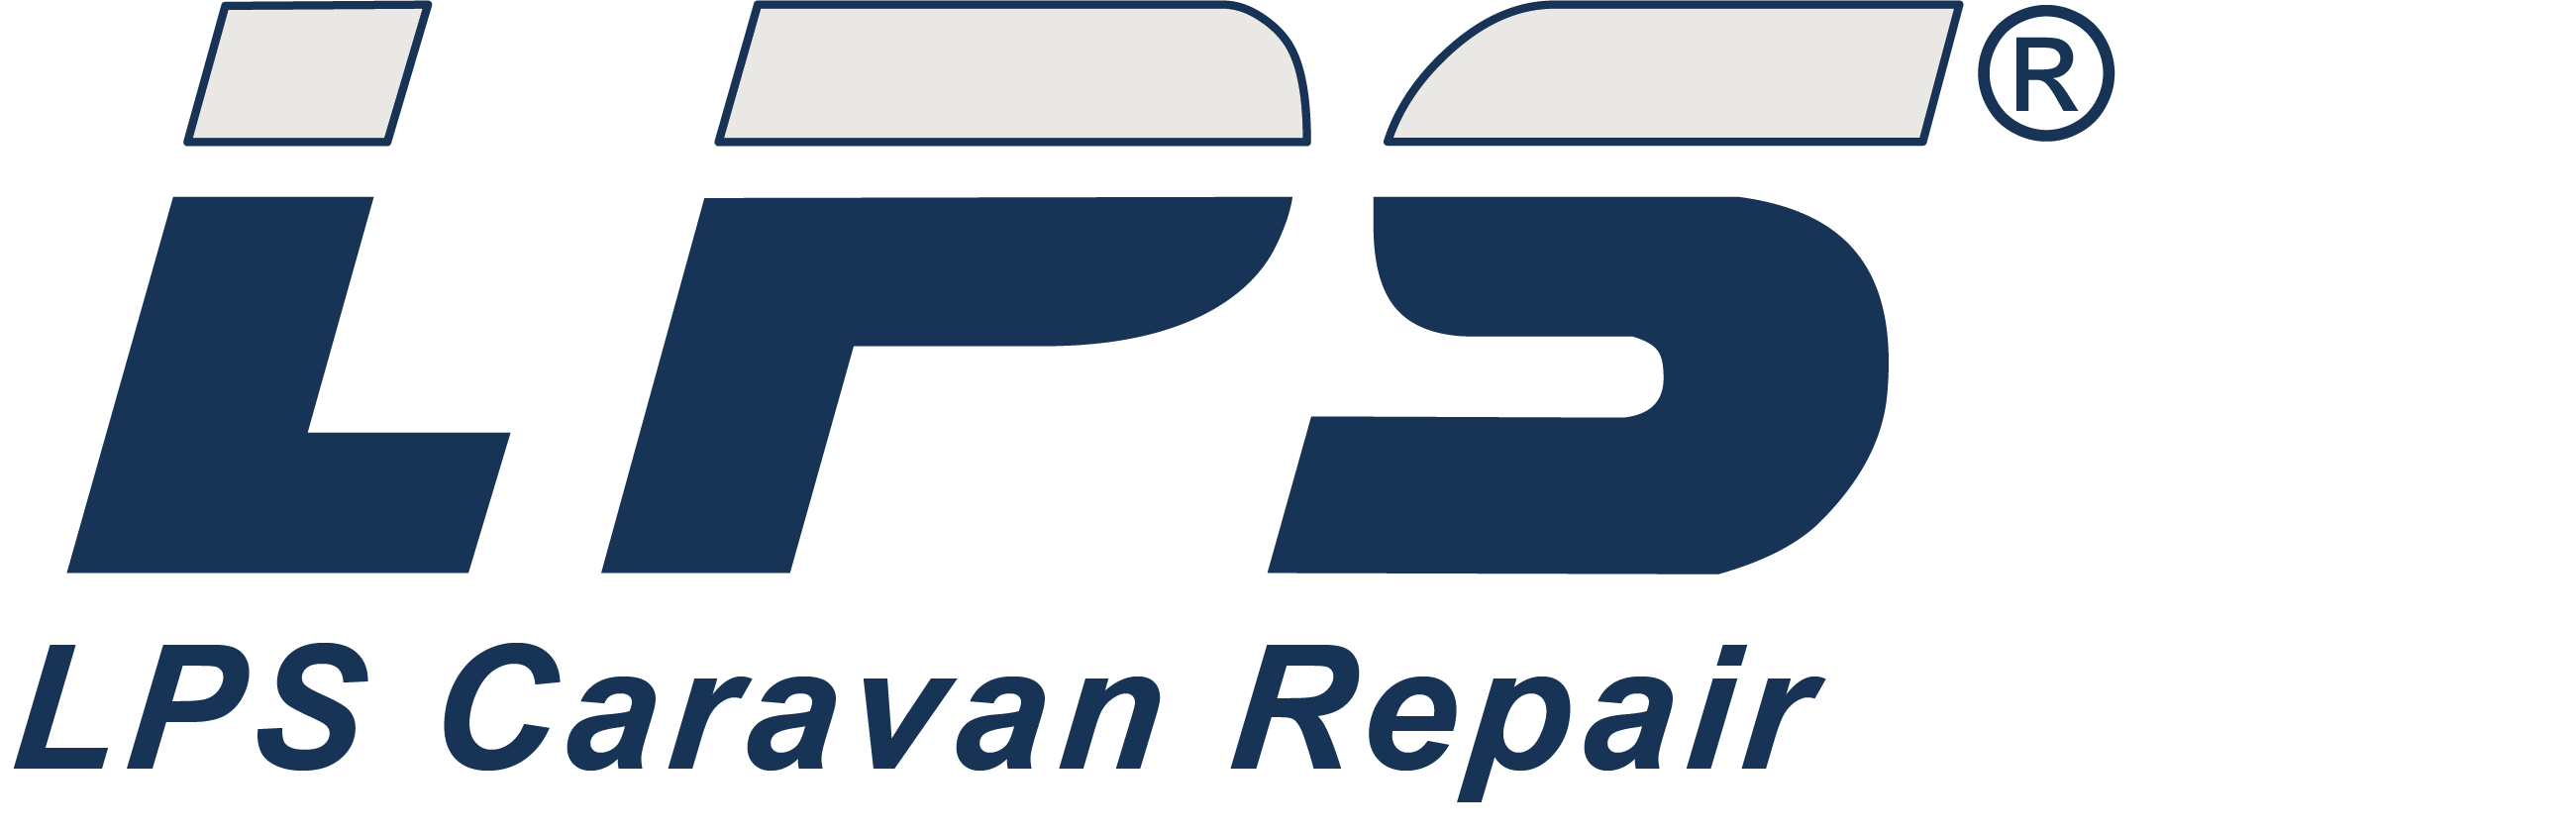 LPS Caravan Repair